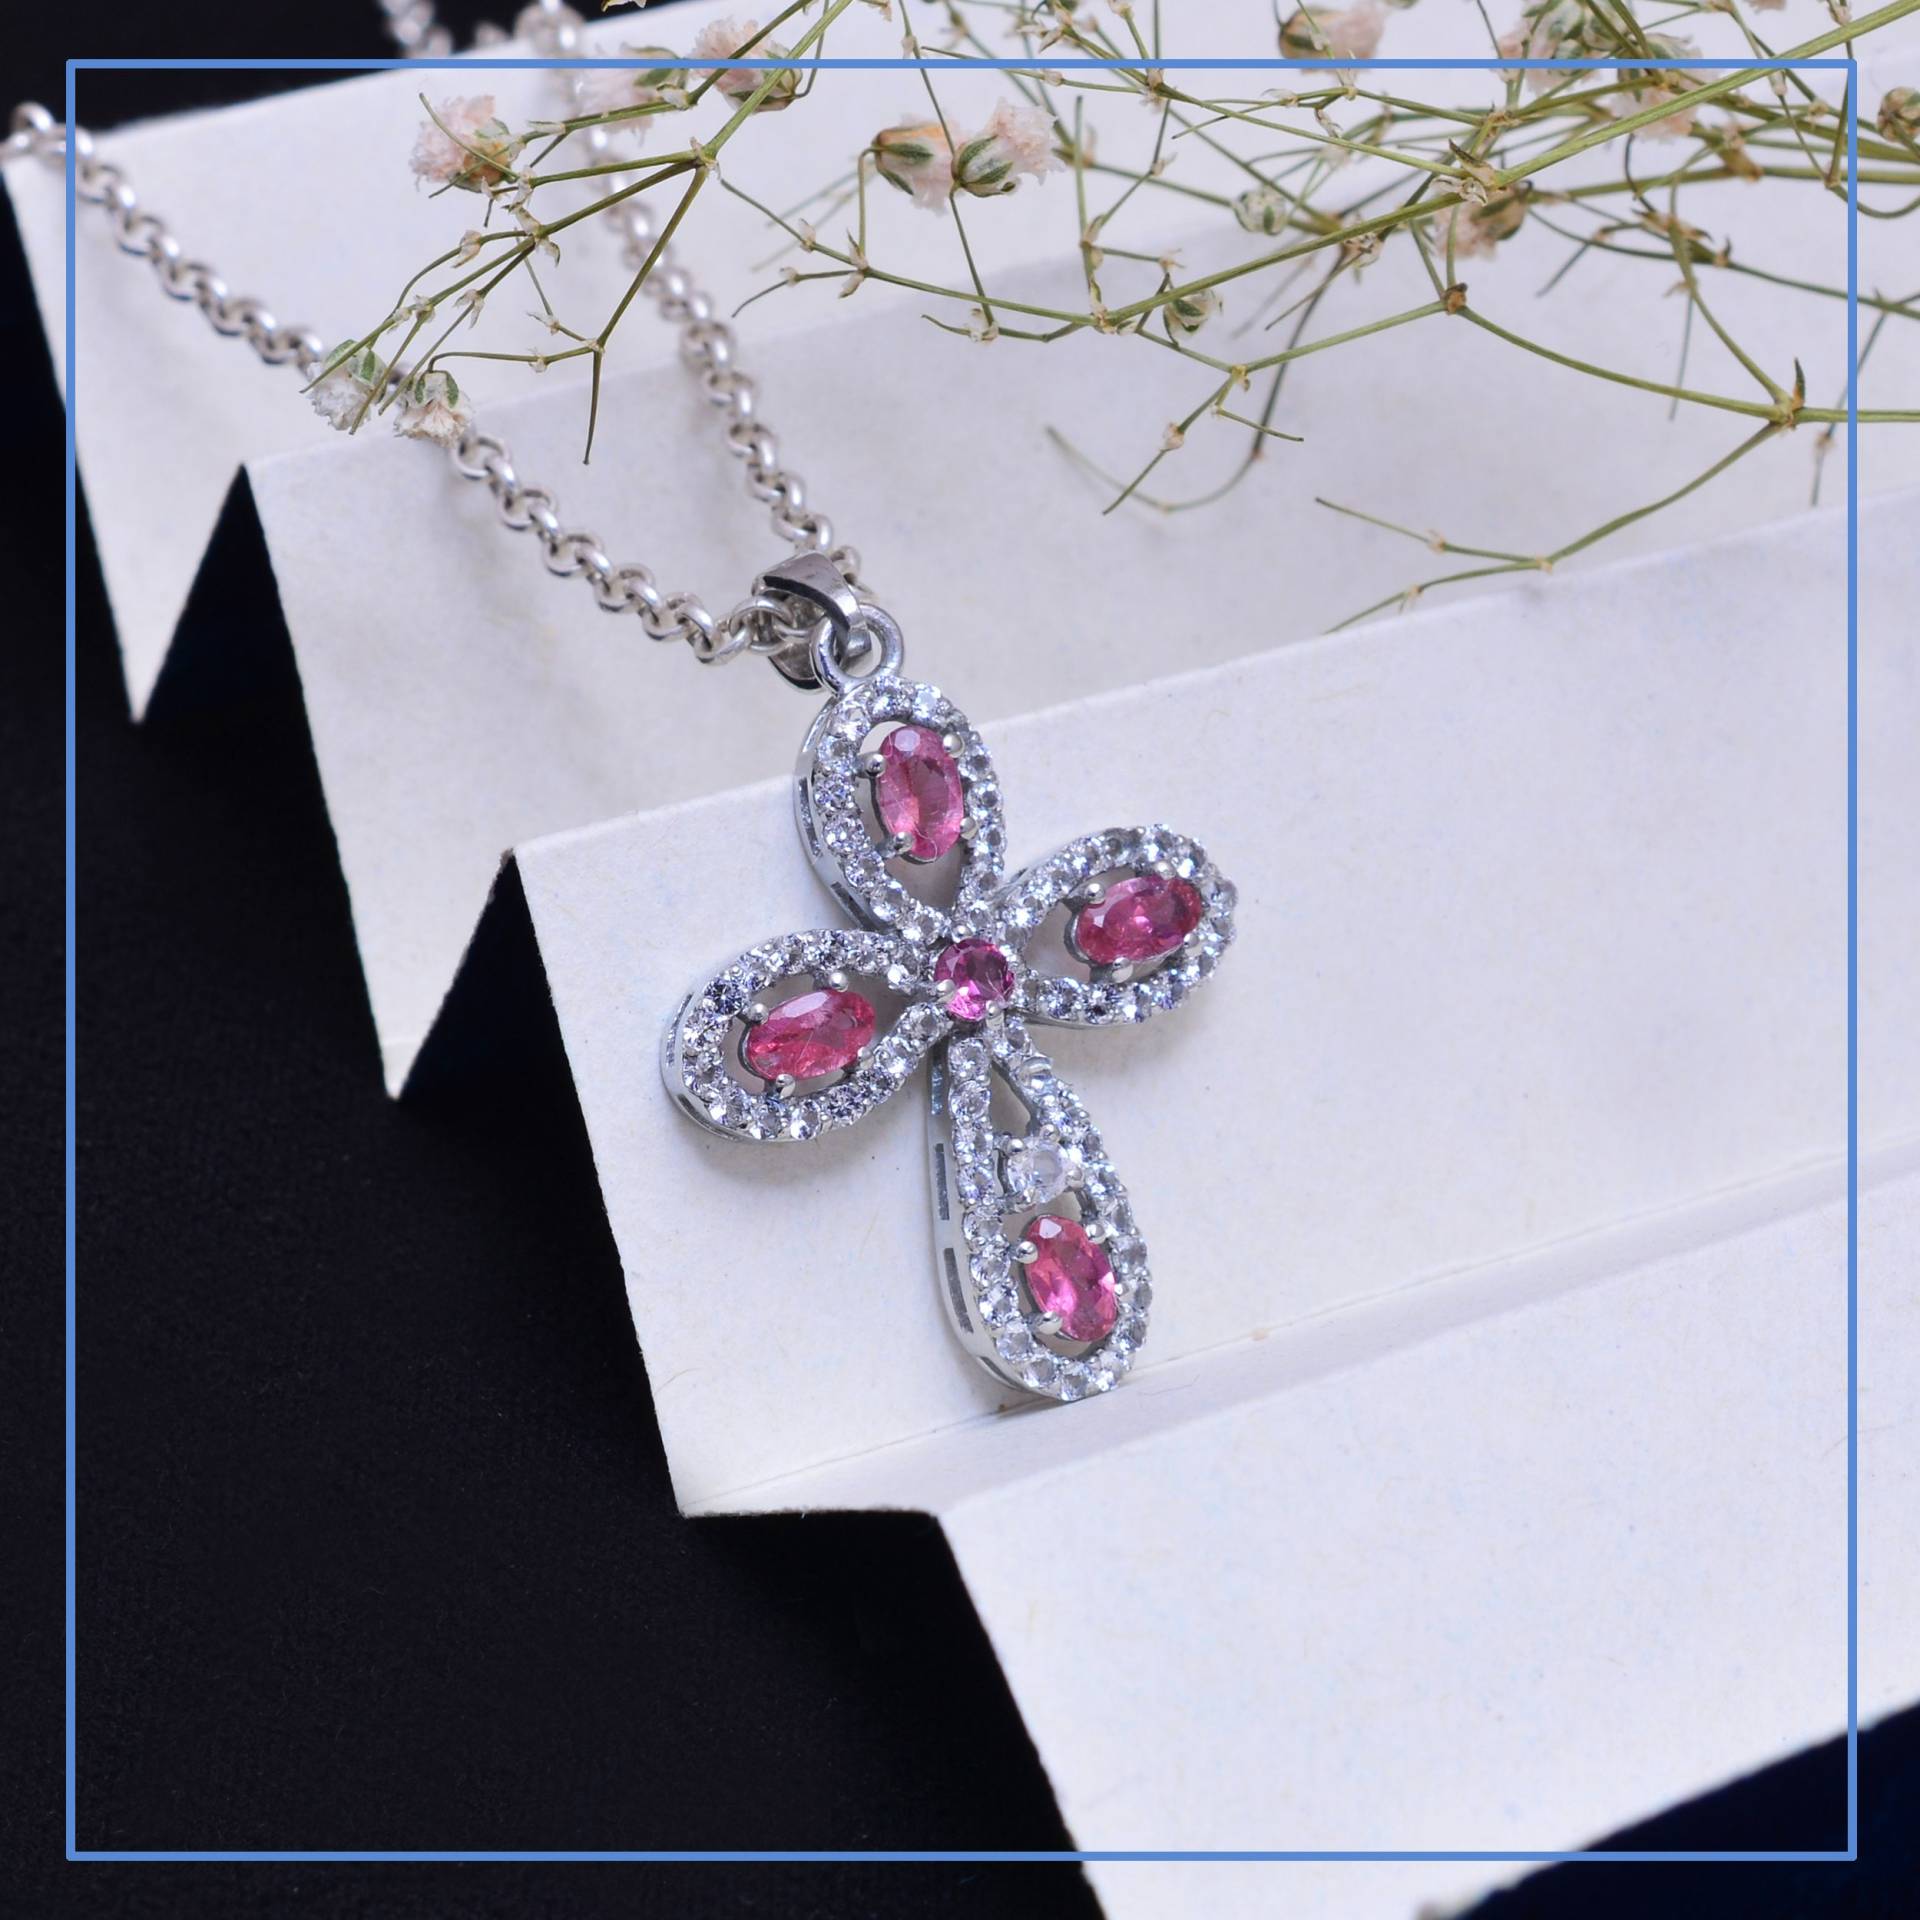 sterling Silber Pink Turmalin Kreuz Anhänger ~ Natürlicher Aaa + Edelstein 925 Ausgefallener Halskette Geschenke Für Sie Sdp02 von SilverGlareJewelry